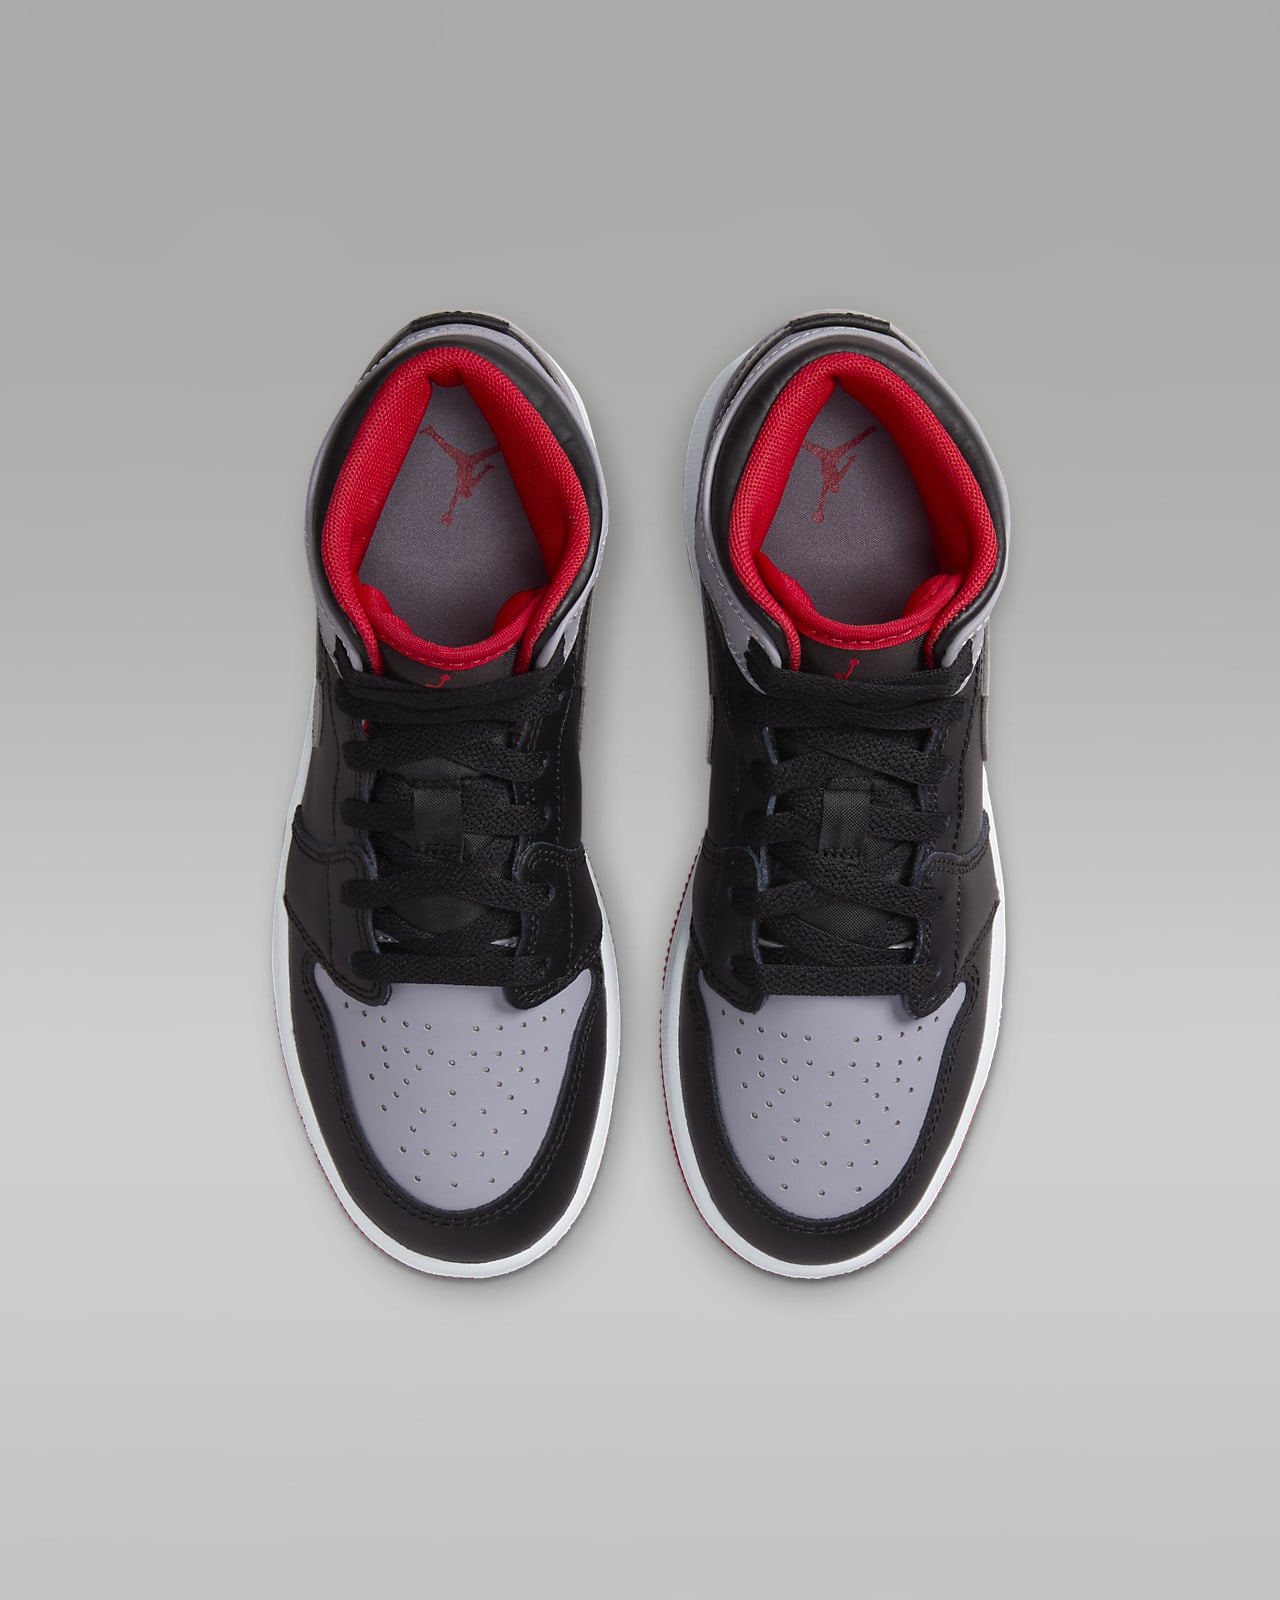 Jordan 1 Mid Zapatillas - Niño/a. Nike ES